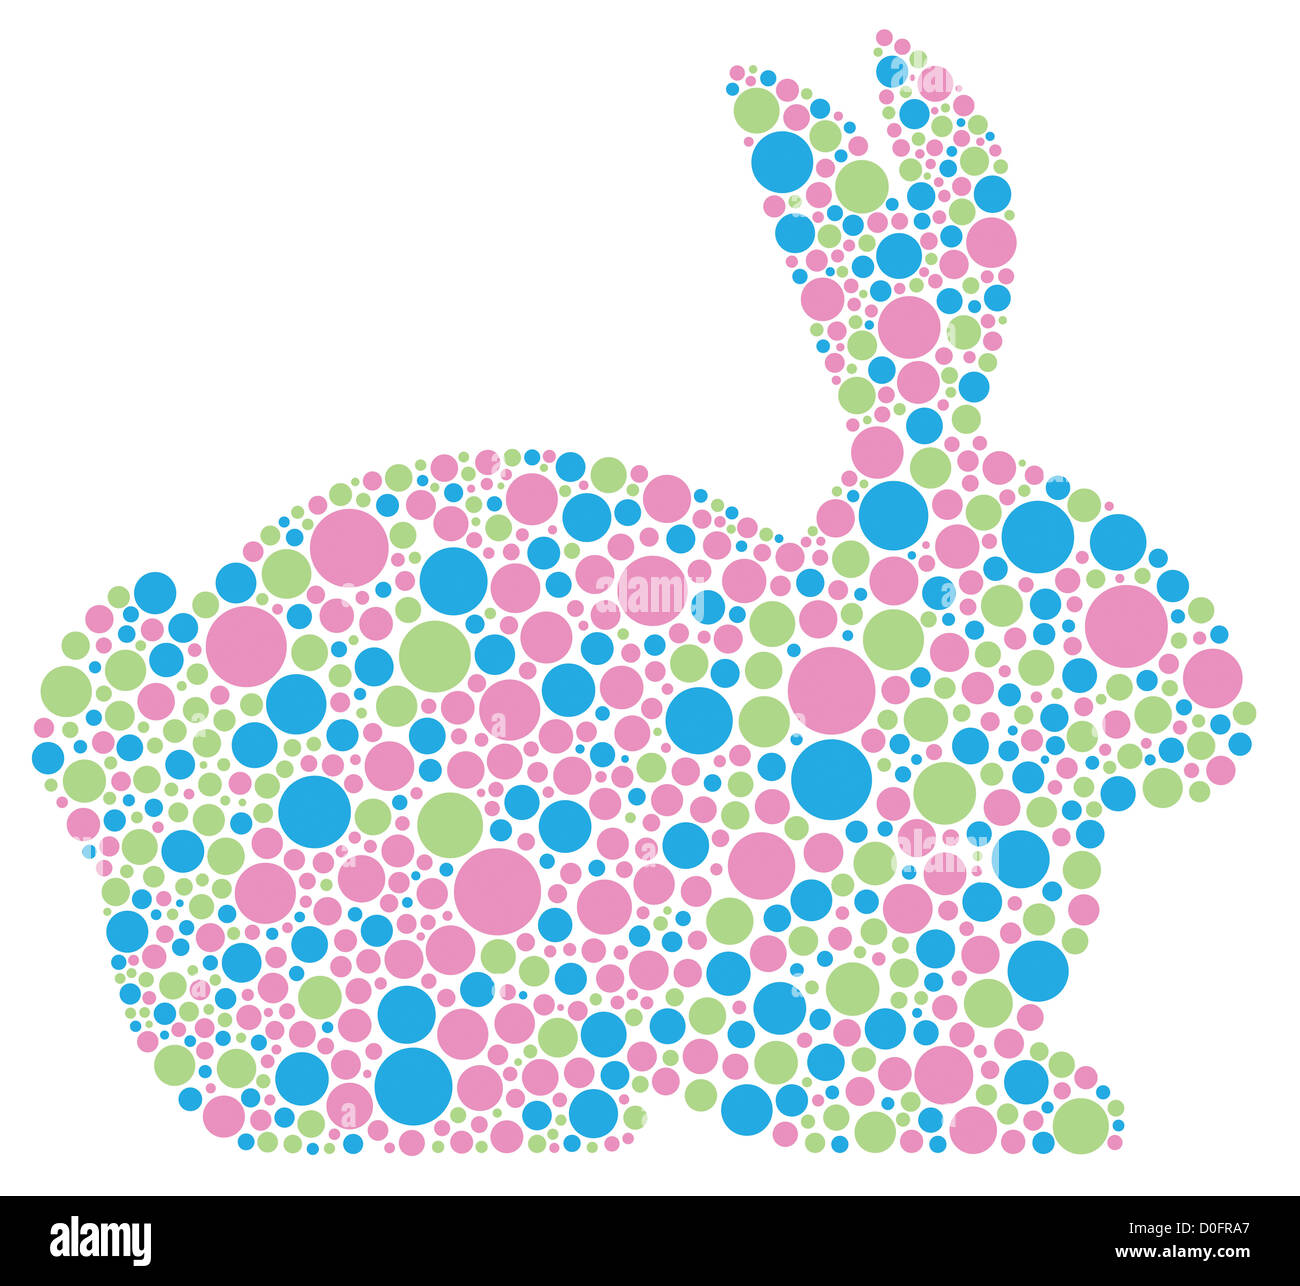 Silhouette de lapin dans des tons pastel Polka Dots illustration isolé sur fond blanc Banque D'Images